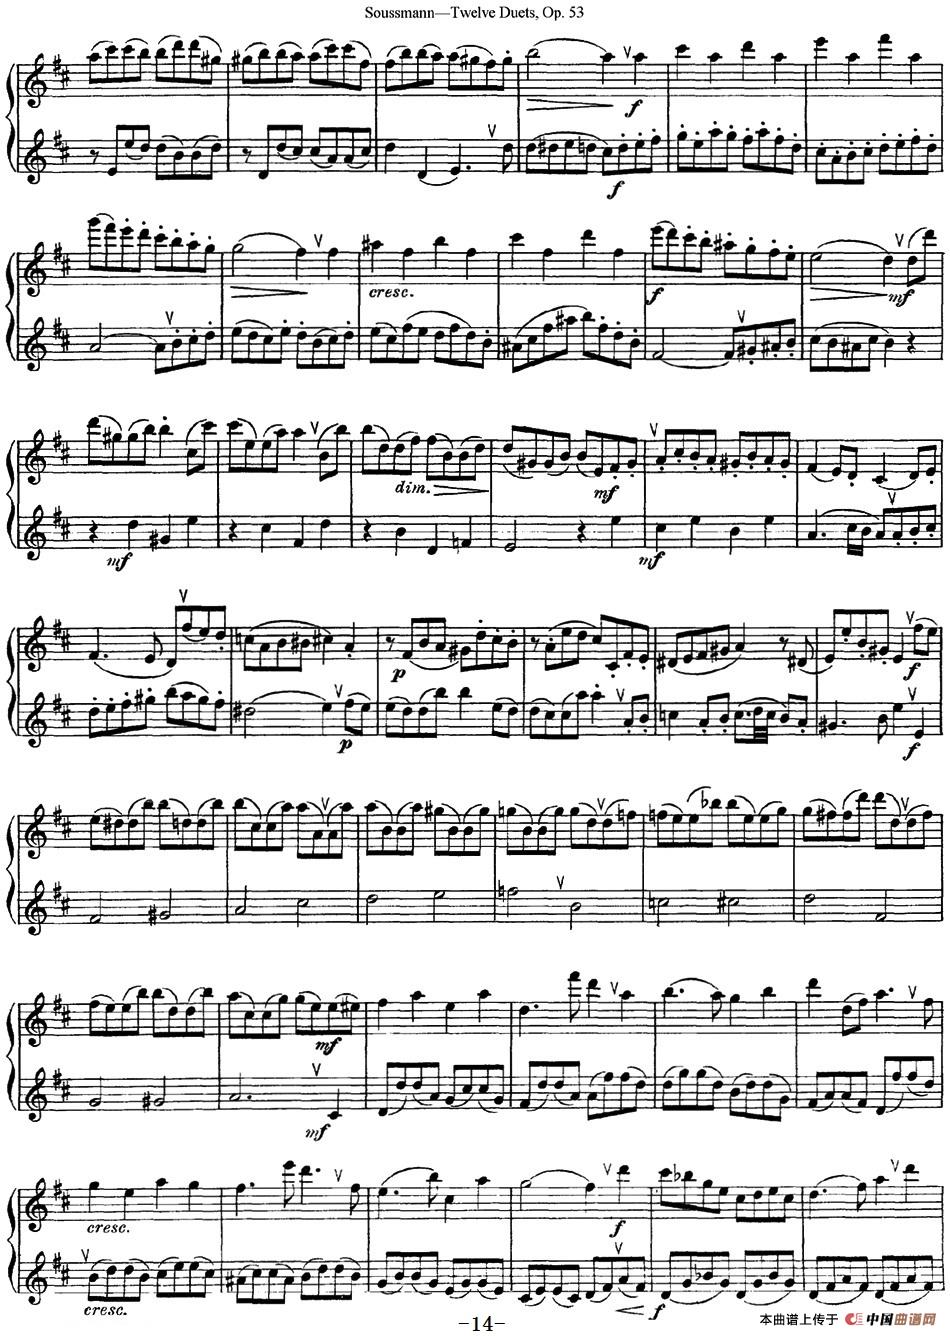 苏斯曼12首长笛重奏曲Op.53（NO.8-NO.9）